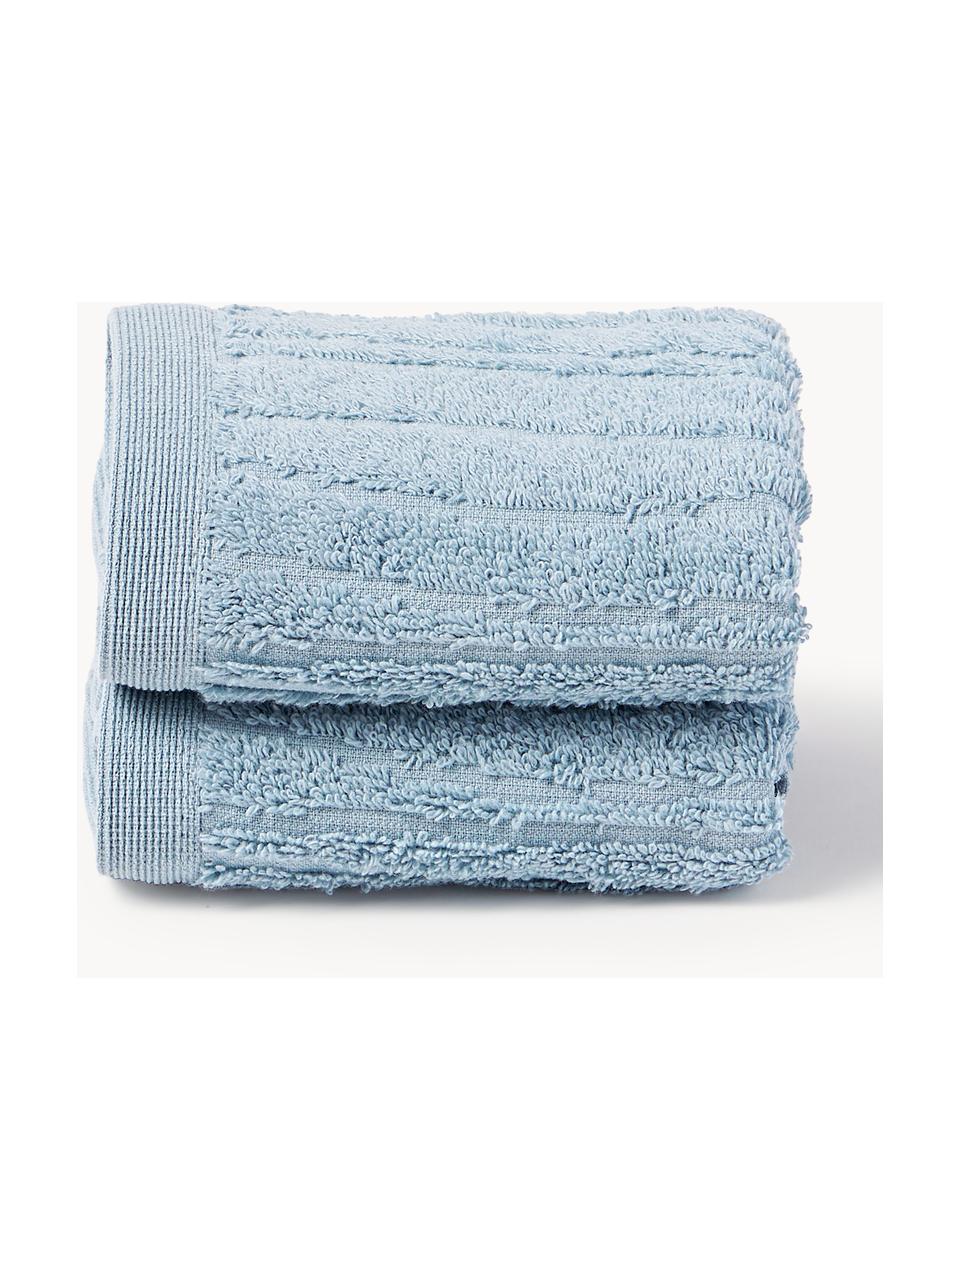 Bavlněný ručník Audrina, různé velikosti, Šedomodrá, Ručník, Š 50 cm, D 100 cm, 2 ks